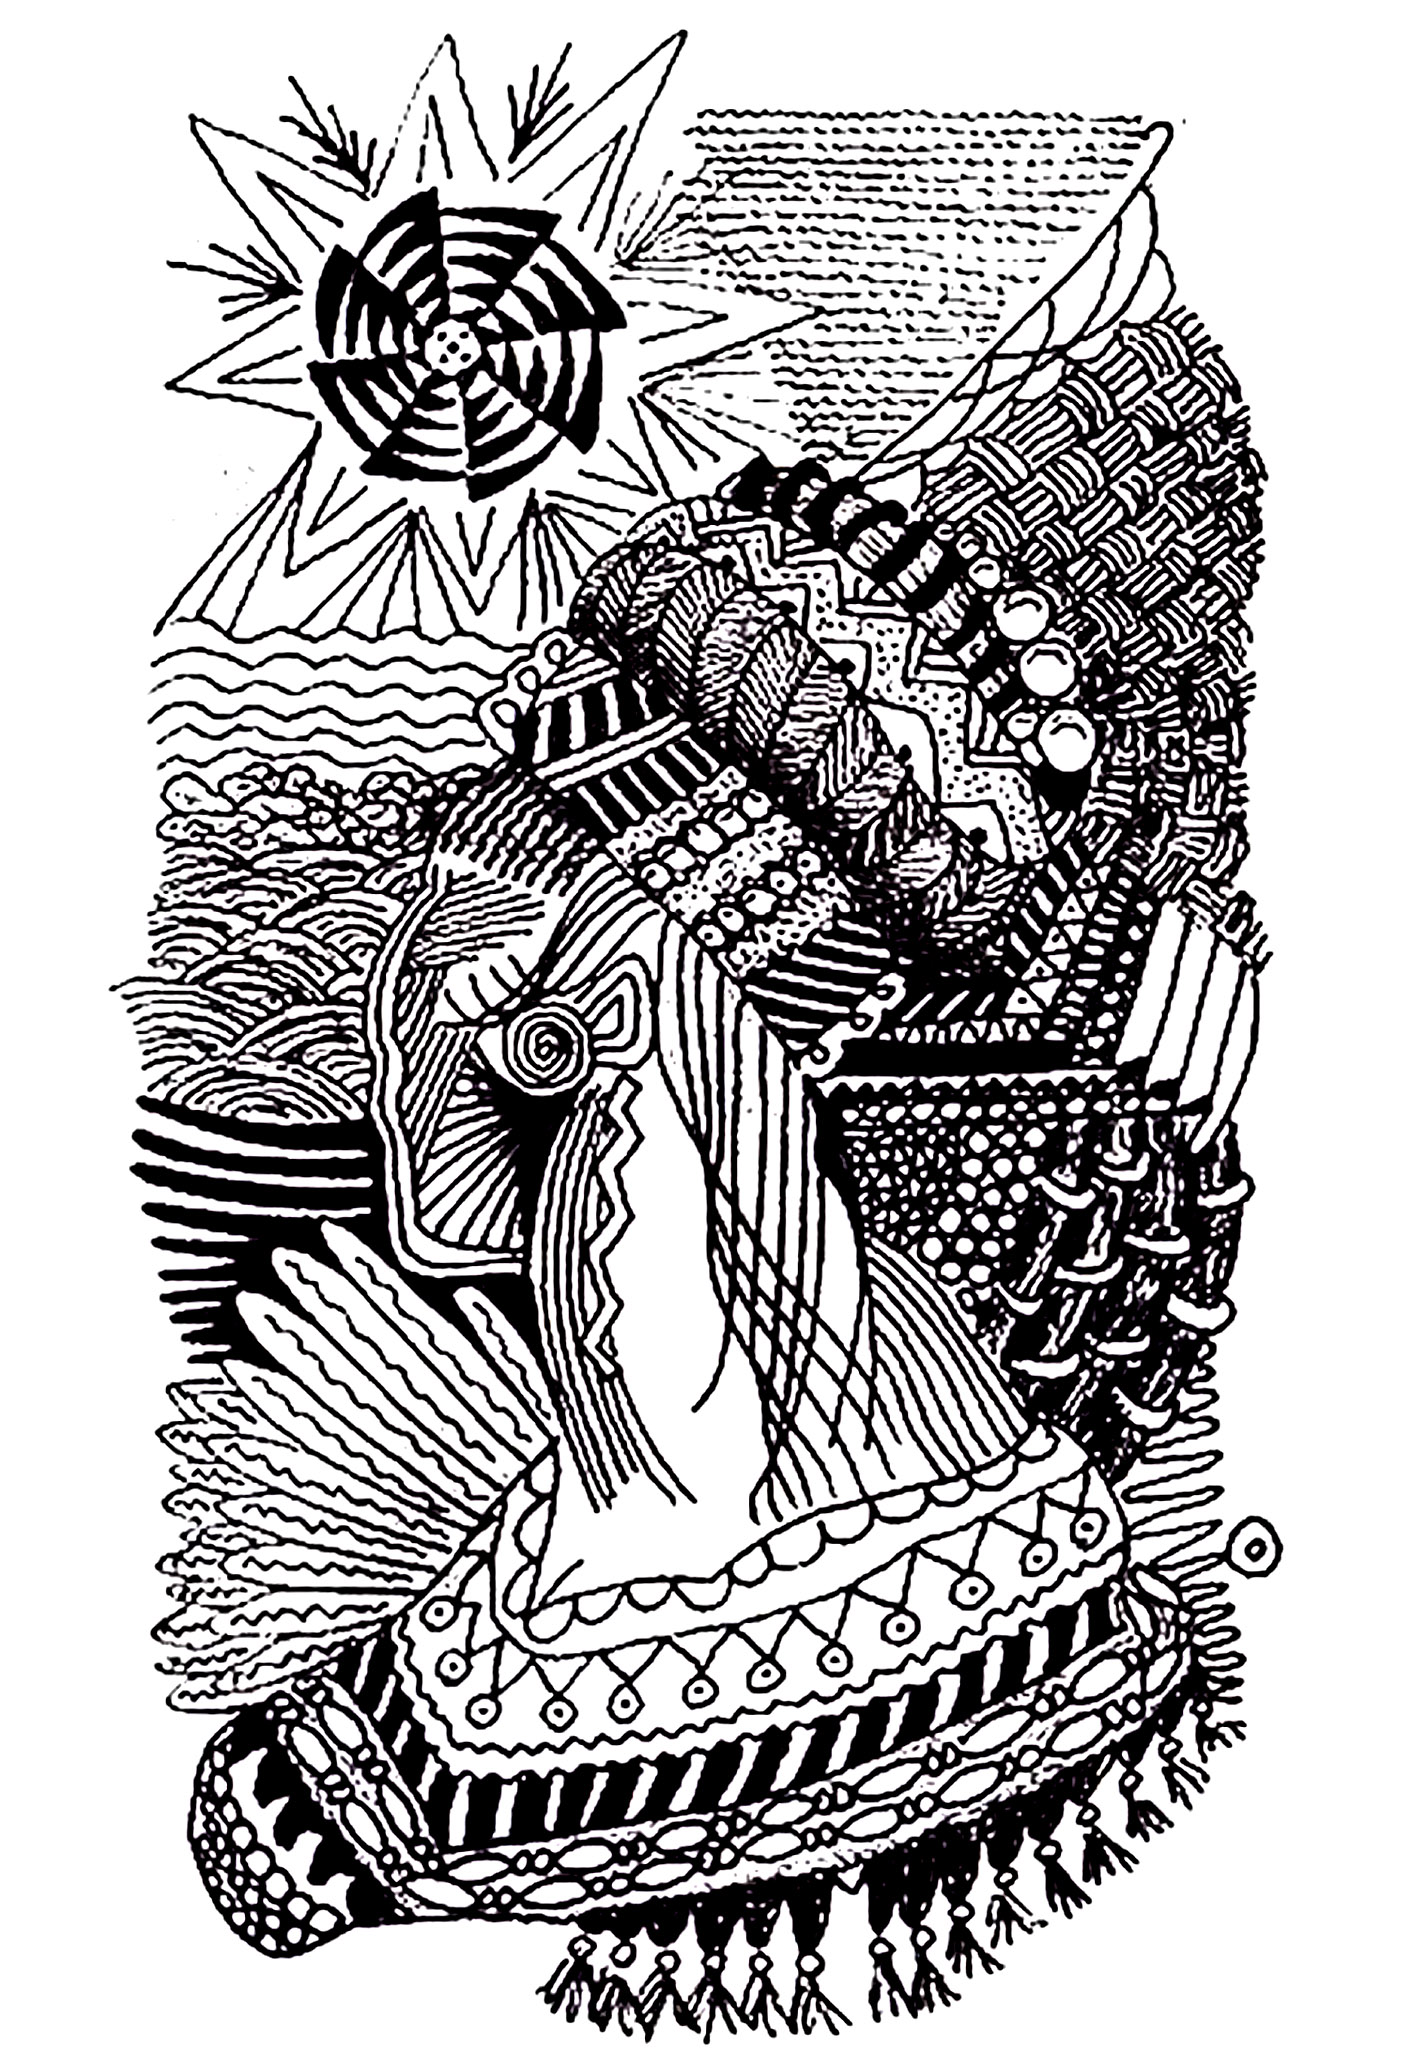 Desenho de uma mulher africana, utilizando motivos zentangulares. As linhas são desenhadas com uma certa suavidade e os padrões Zentangle dão um toque de originalidade e sofisticação.
